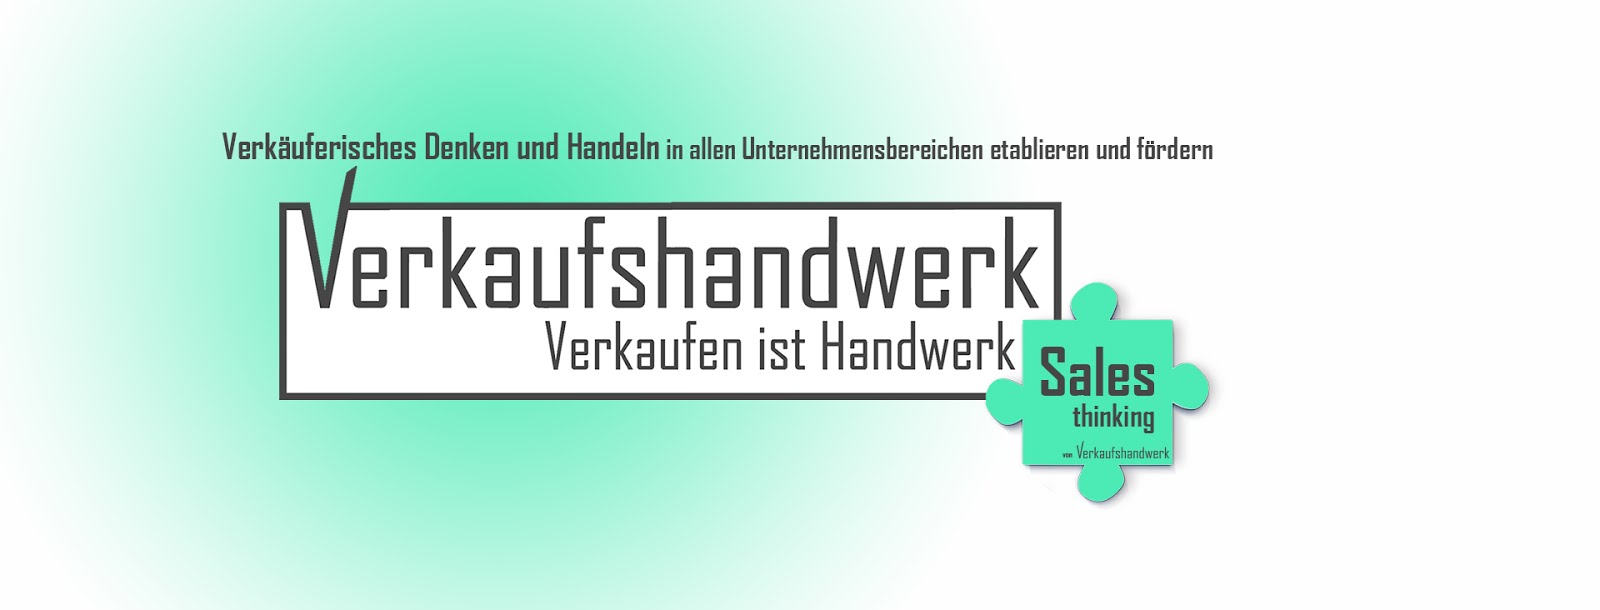 Sales thinking von Verkaufshandwerk.com